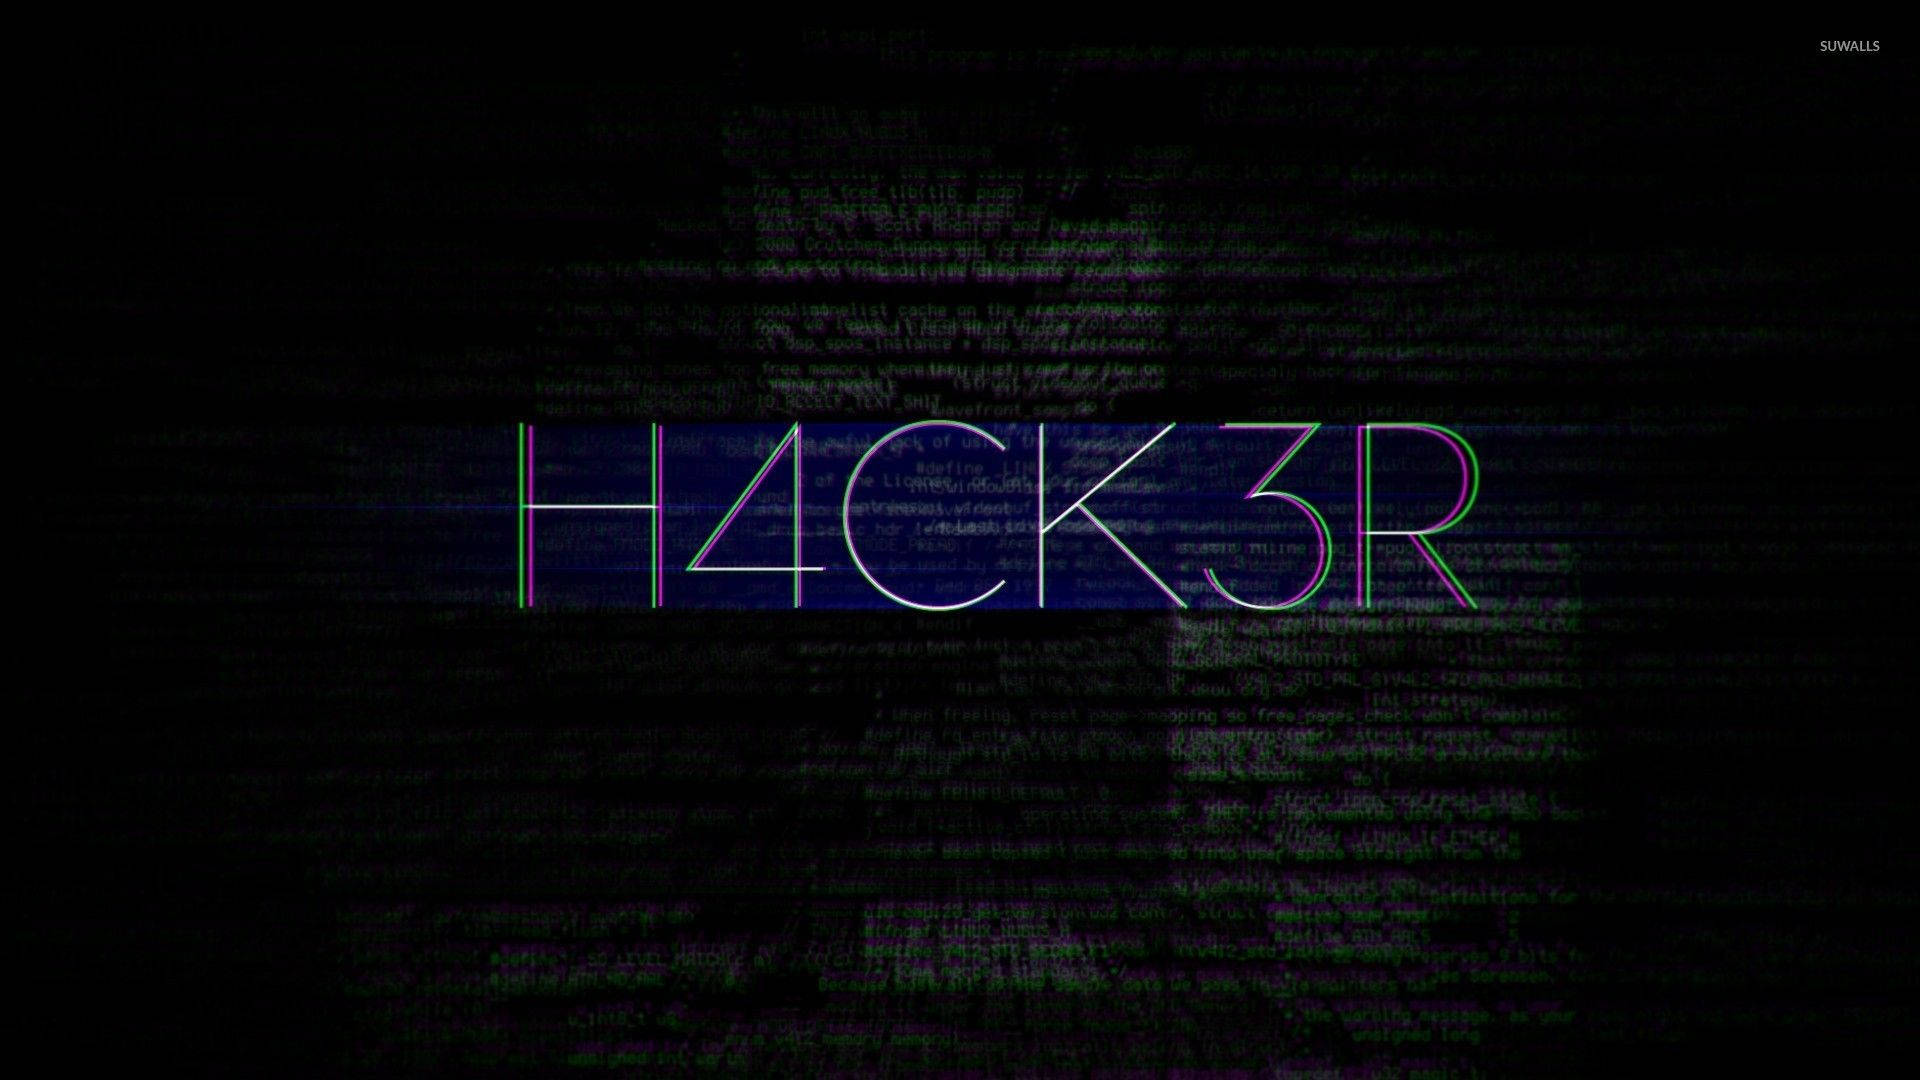 Hacker Glitch Font Full Hd Wallpaper